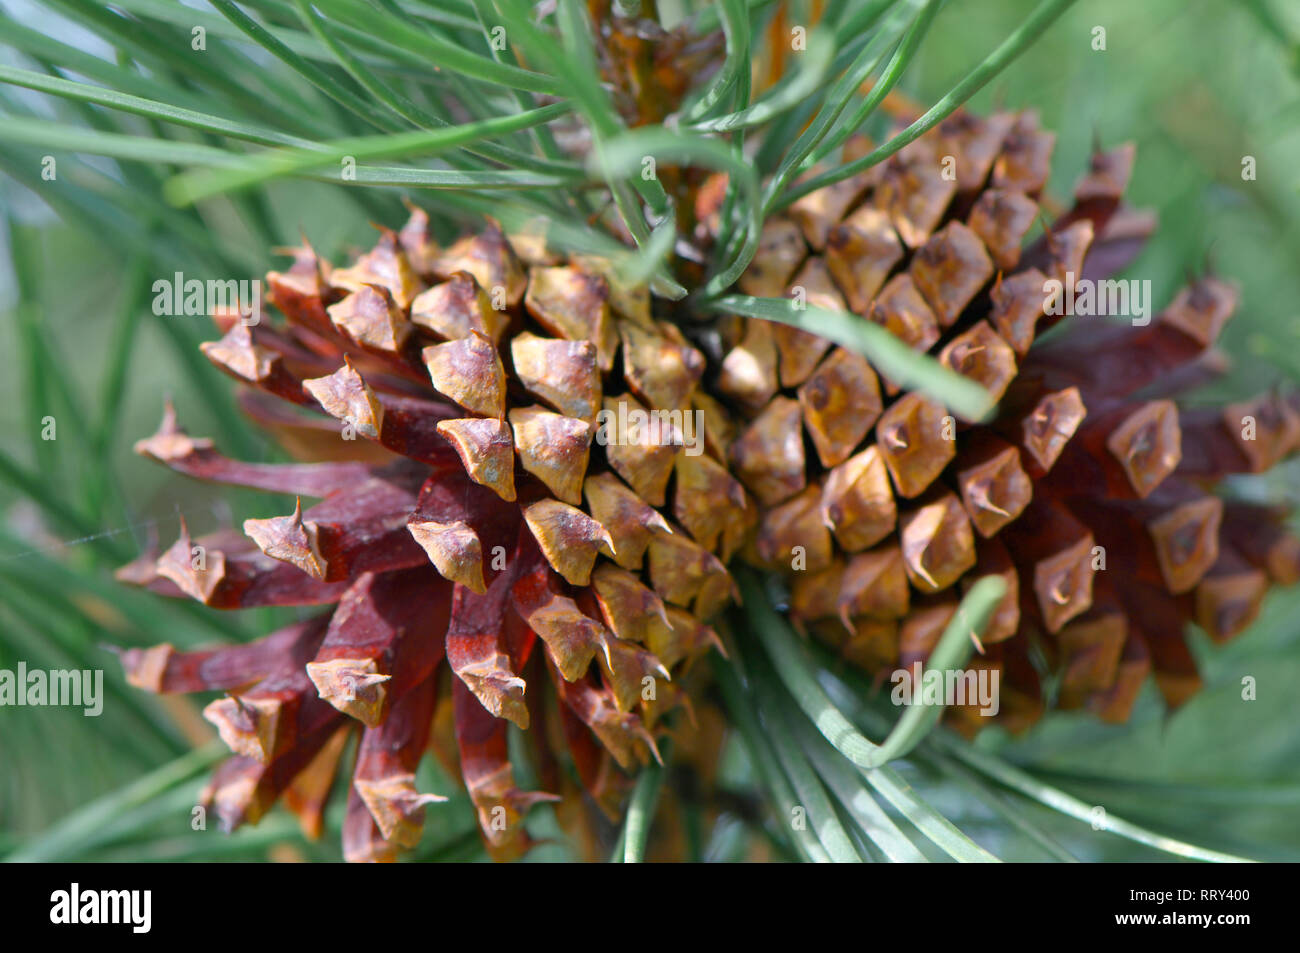 Two Ponderosa (Pinus) pine cones on the tree, Stock Photo